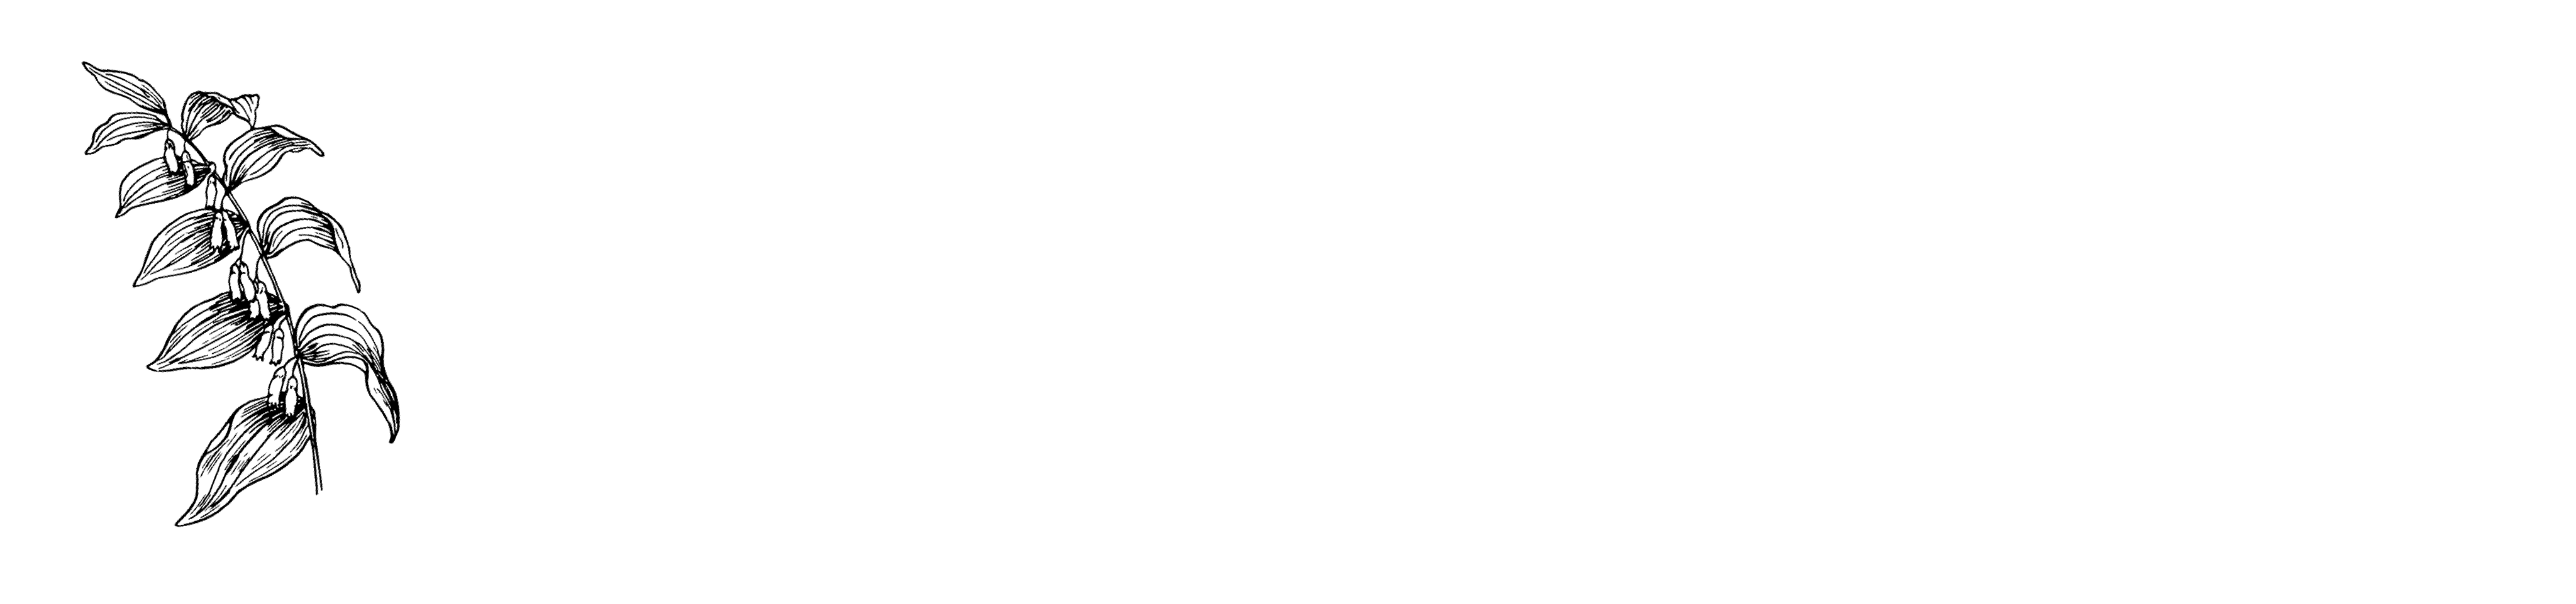 Alex Klein, Herbalist